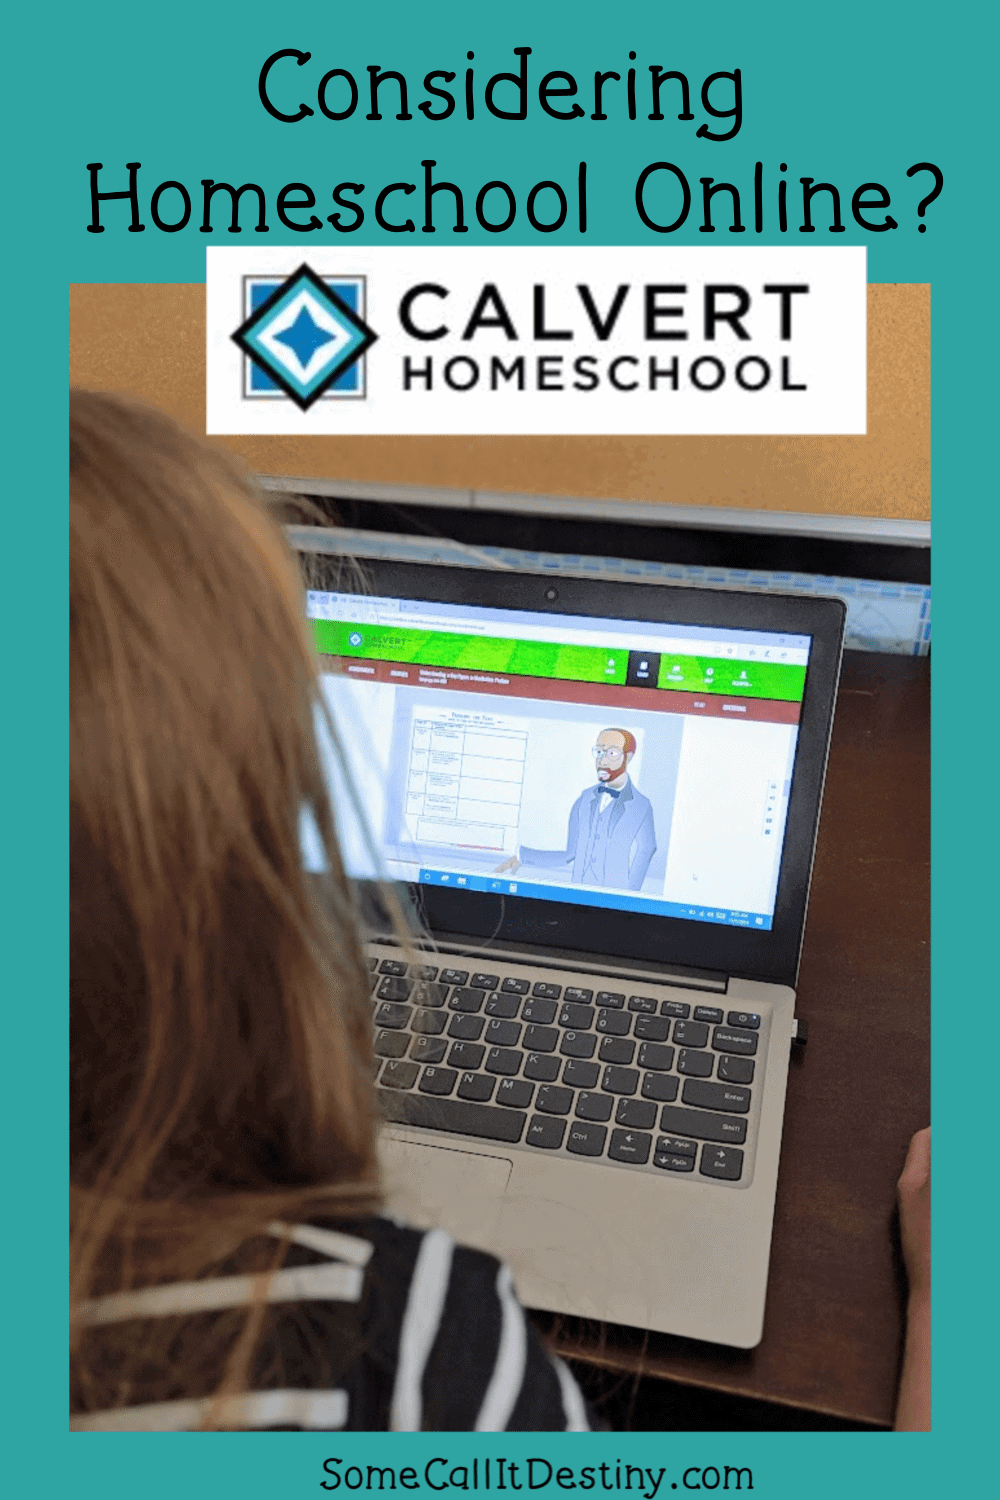 Calvert Homeschool Online--full homeschool curriculum